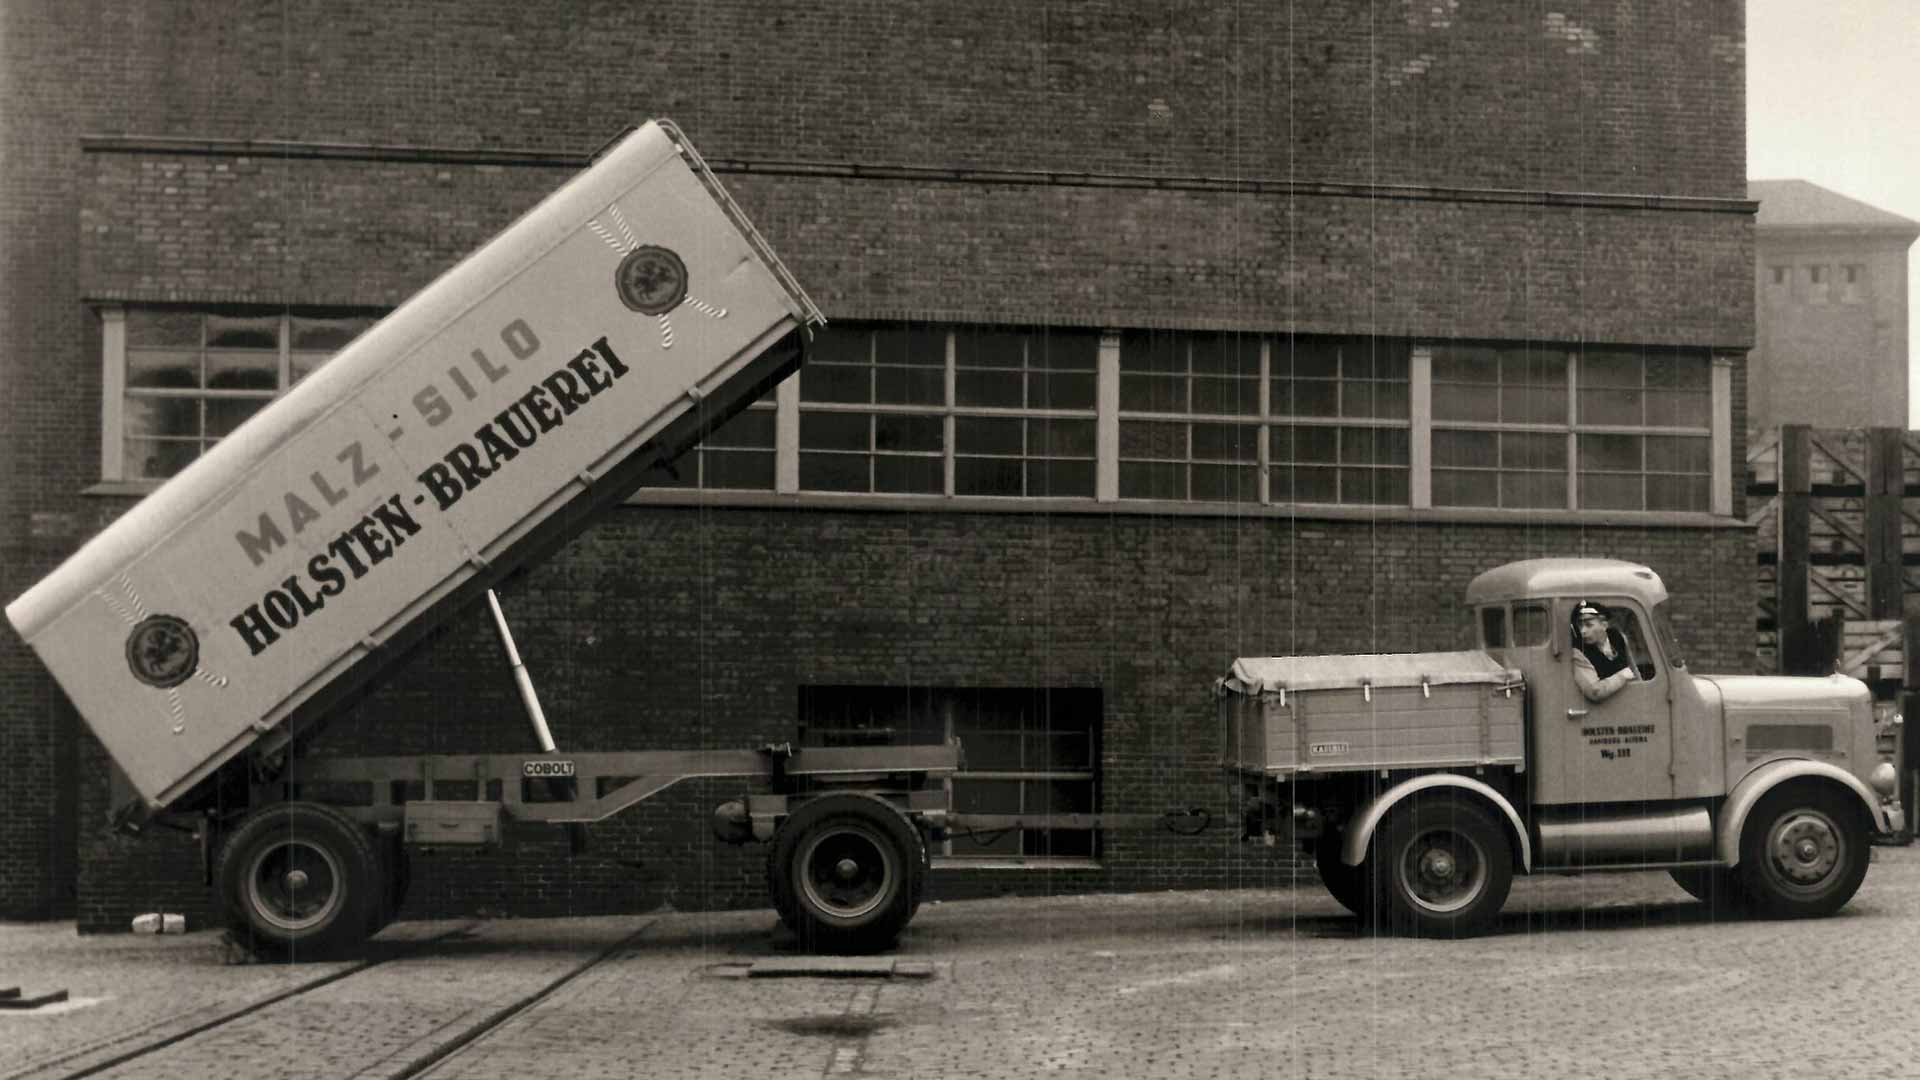 Historische Fotografie von Lieferwagen der Malz an der Holsten Brauerei anliefert